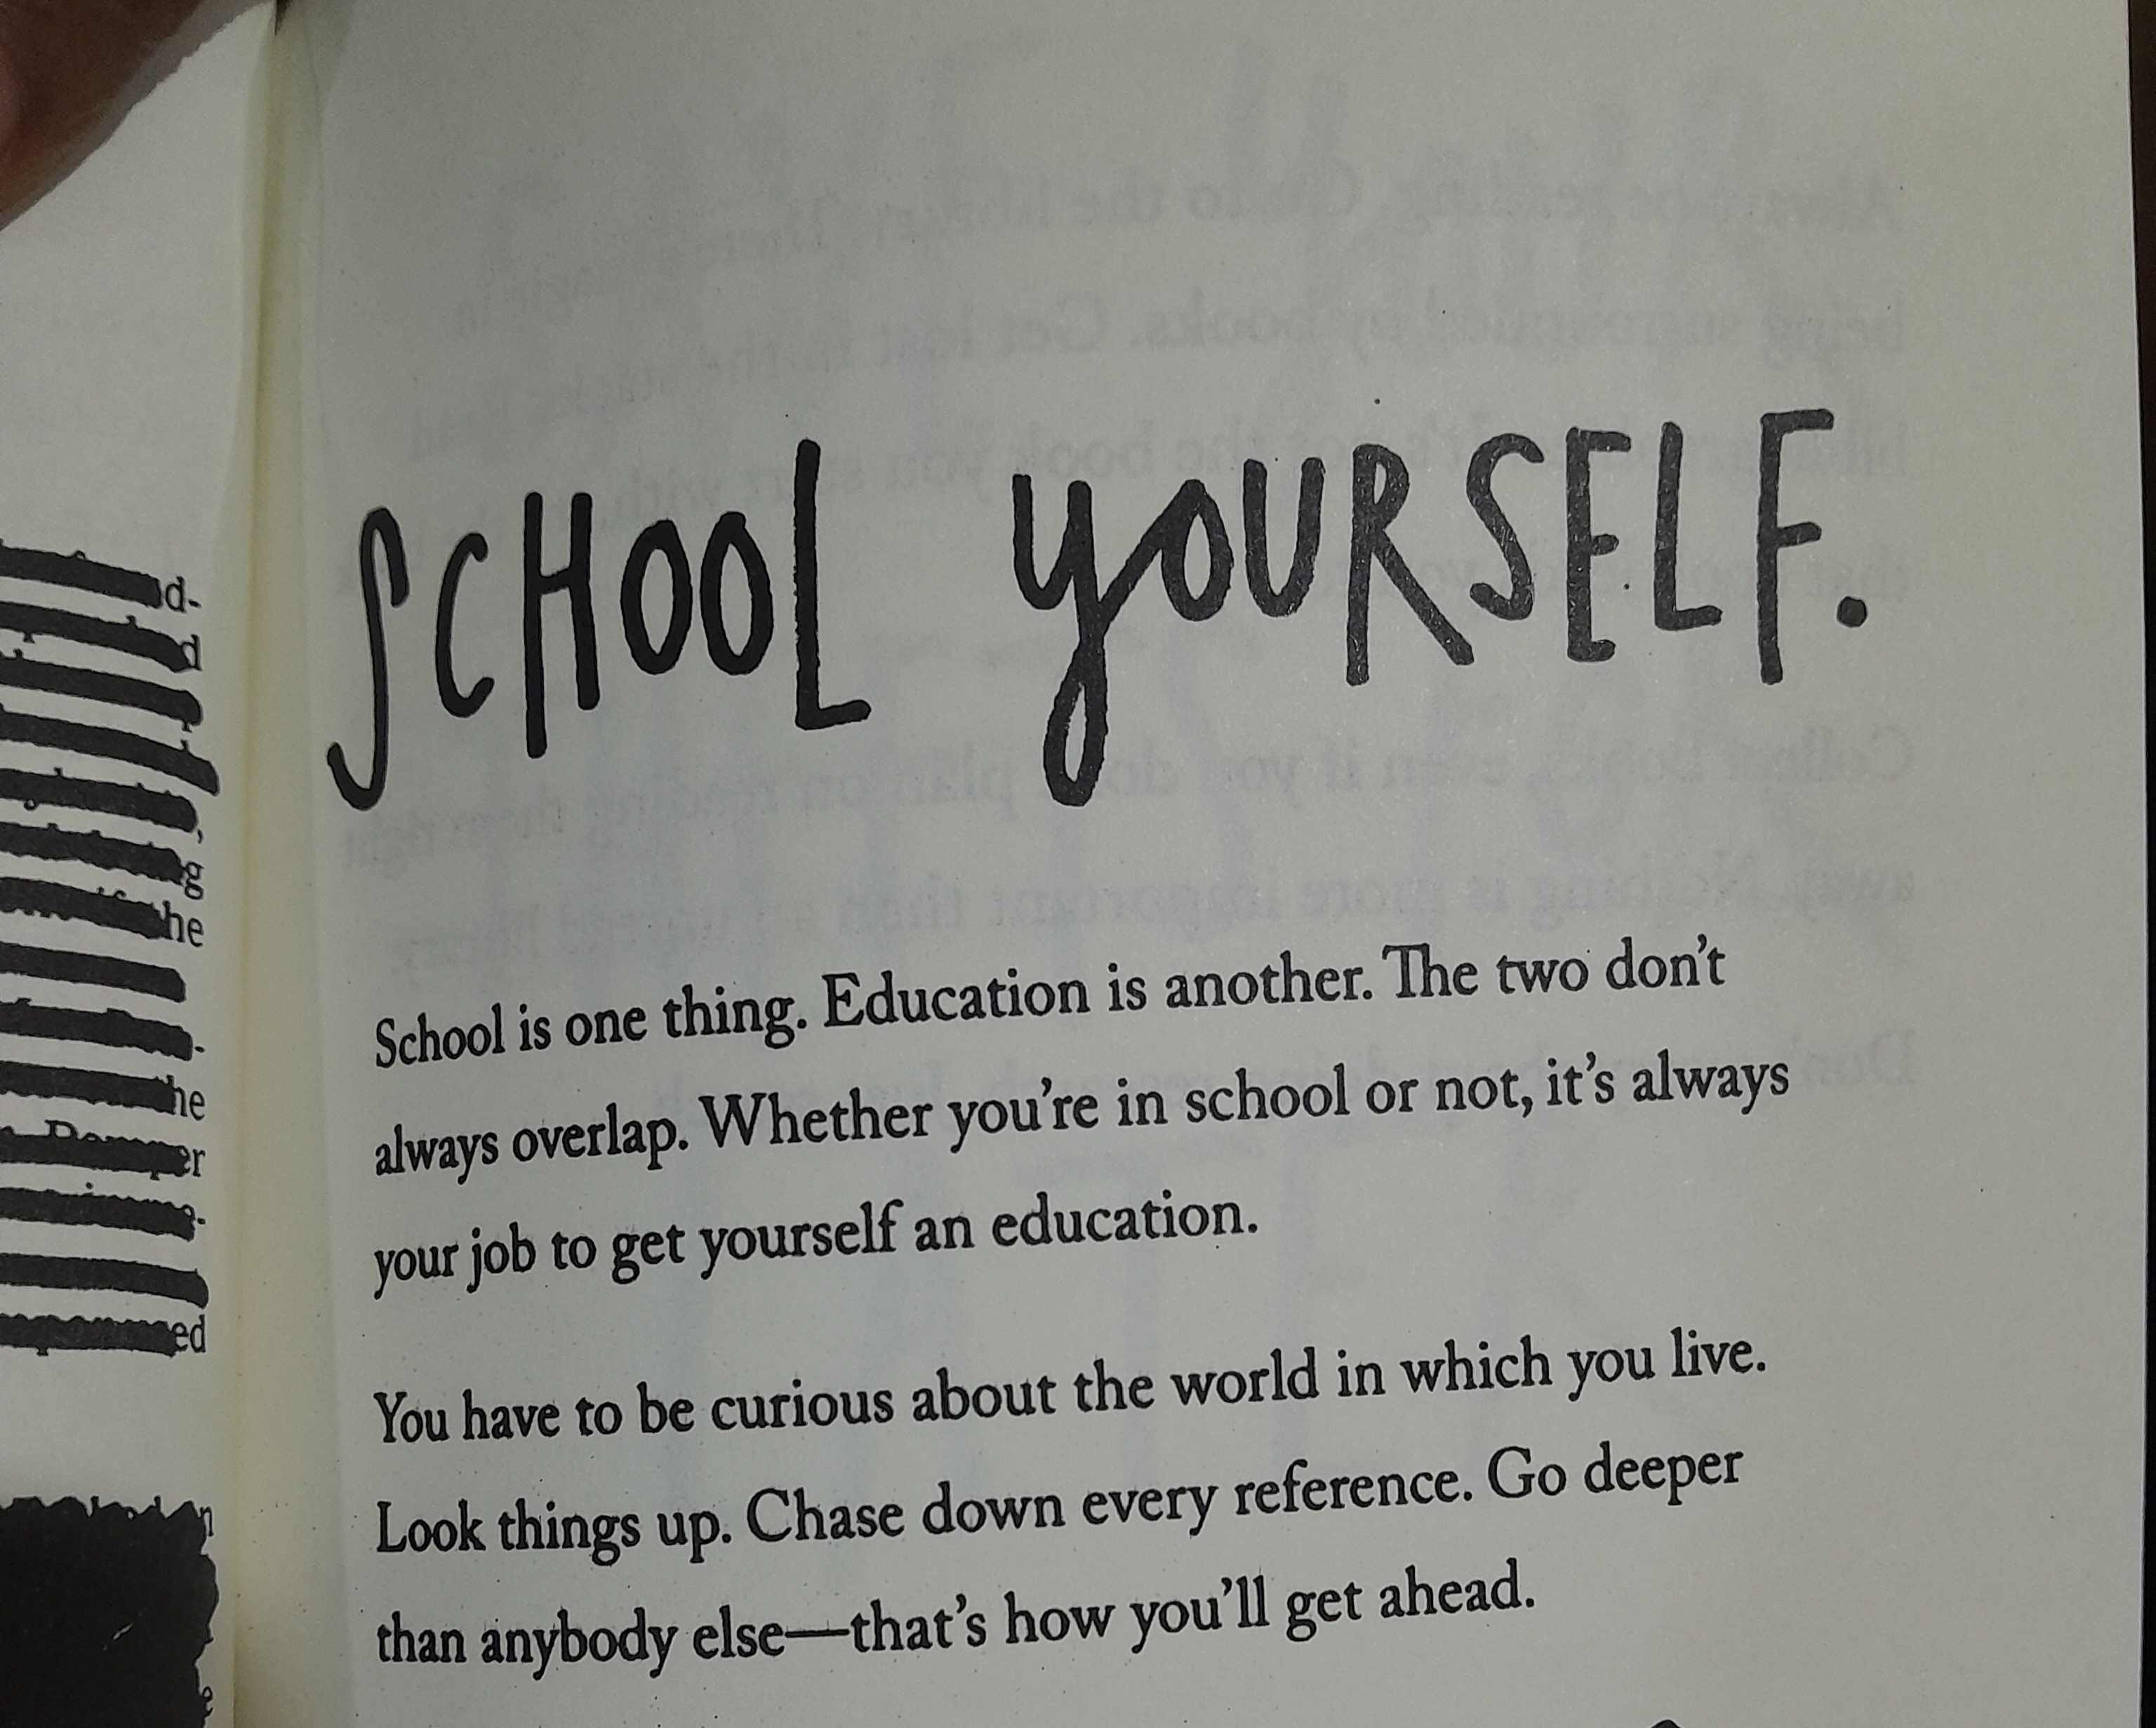 school yourself